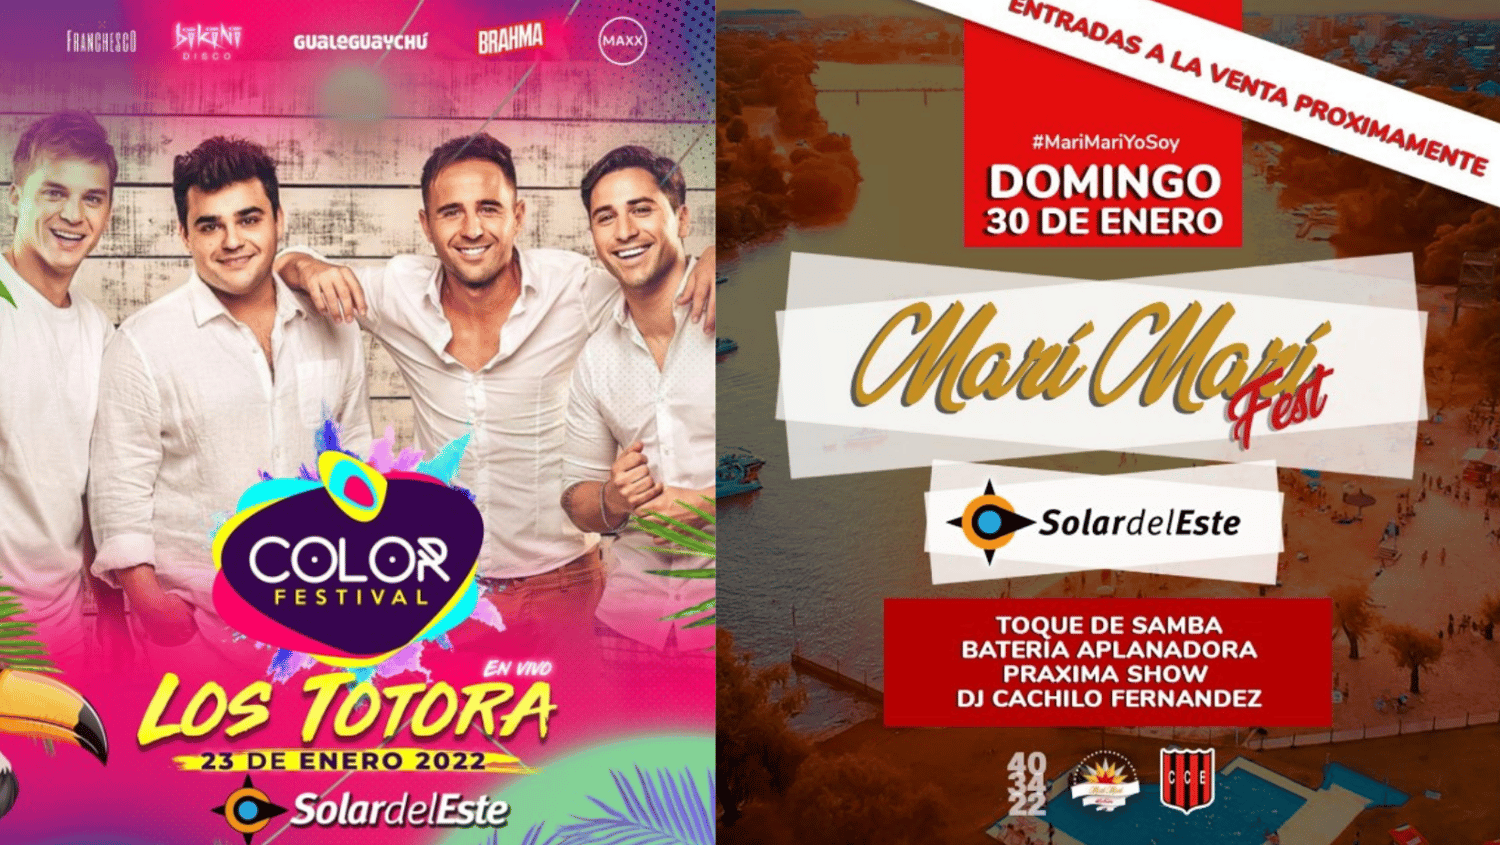 Enero se despide a pura música: Los Totora y Marí Marí Fest en Solar del Este